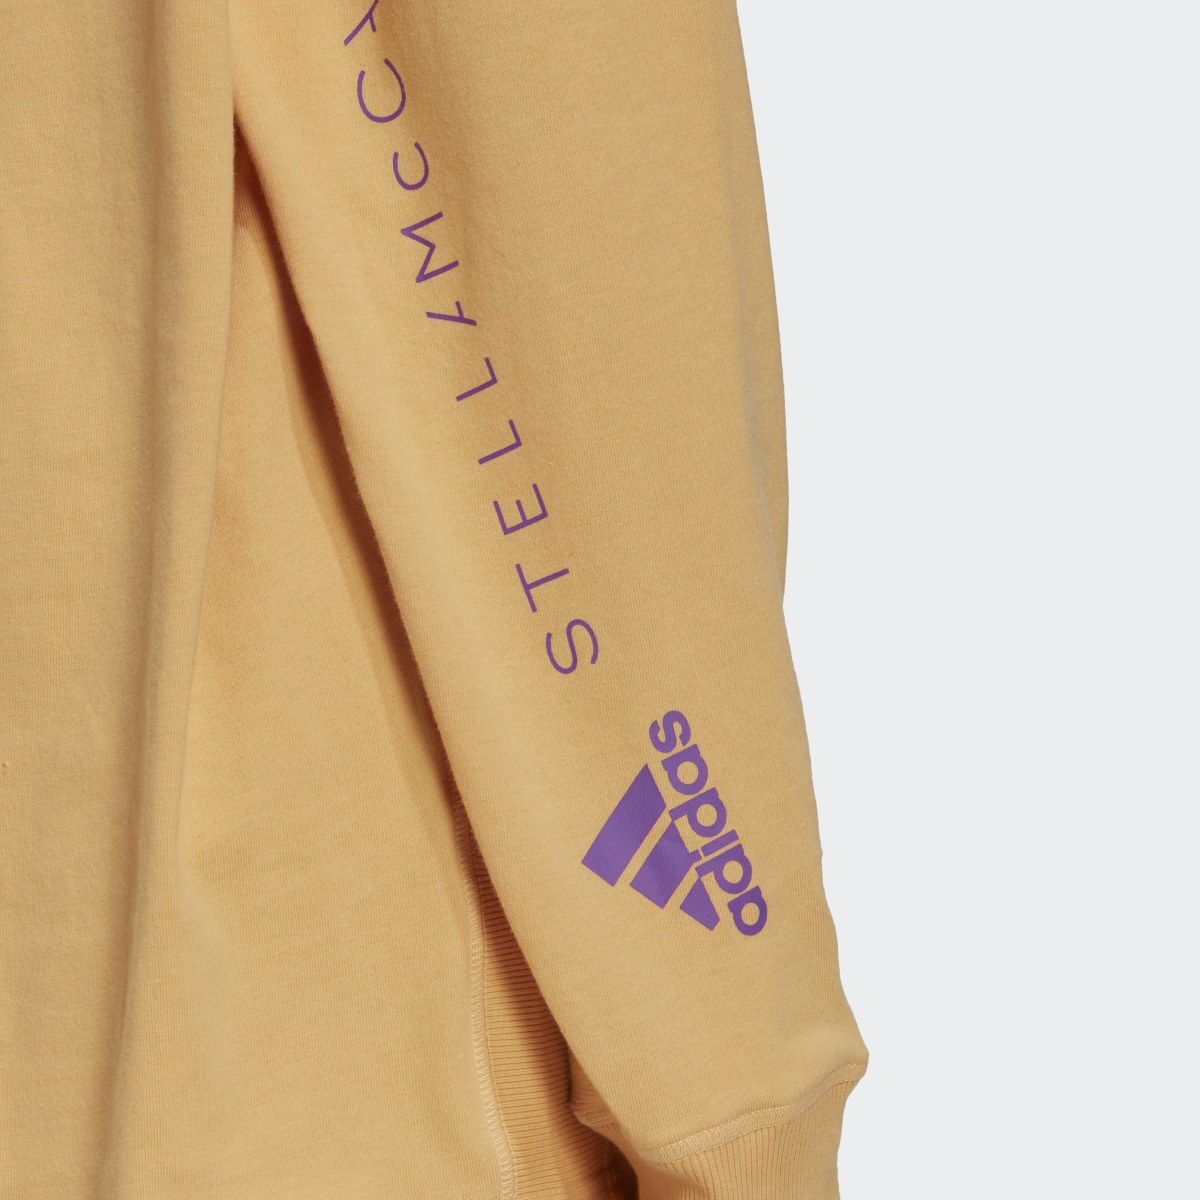 Adidas by Stella McCartney Long Sleeve Long-Sleeve Top (Gender Neutral). 7